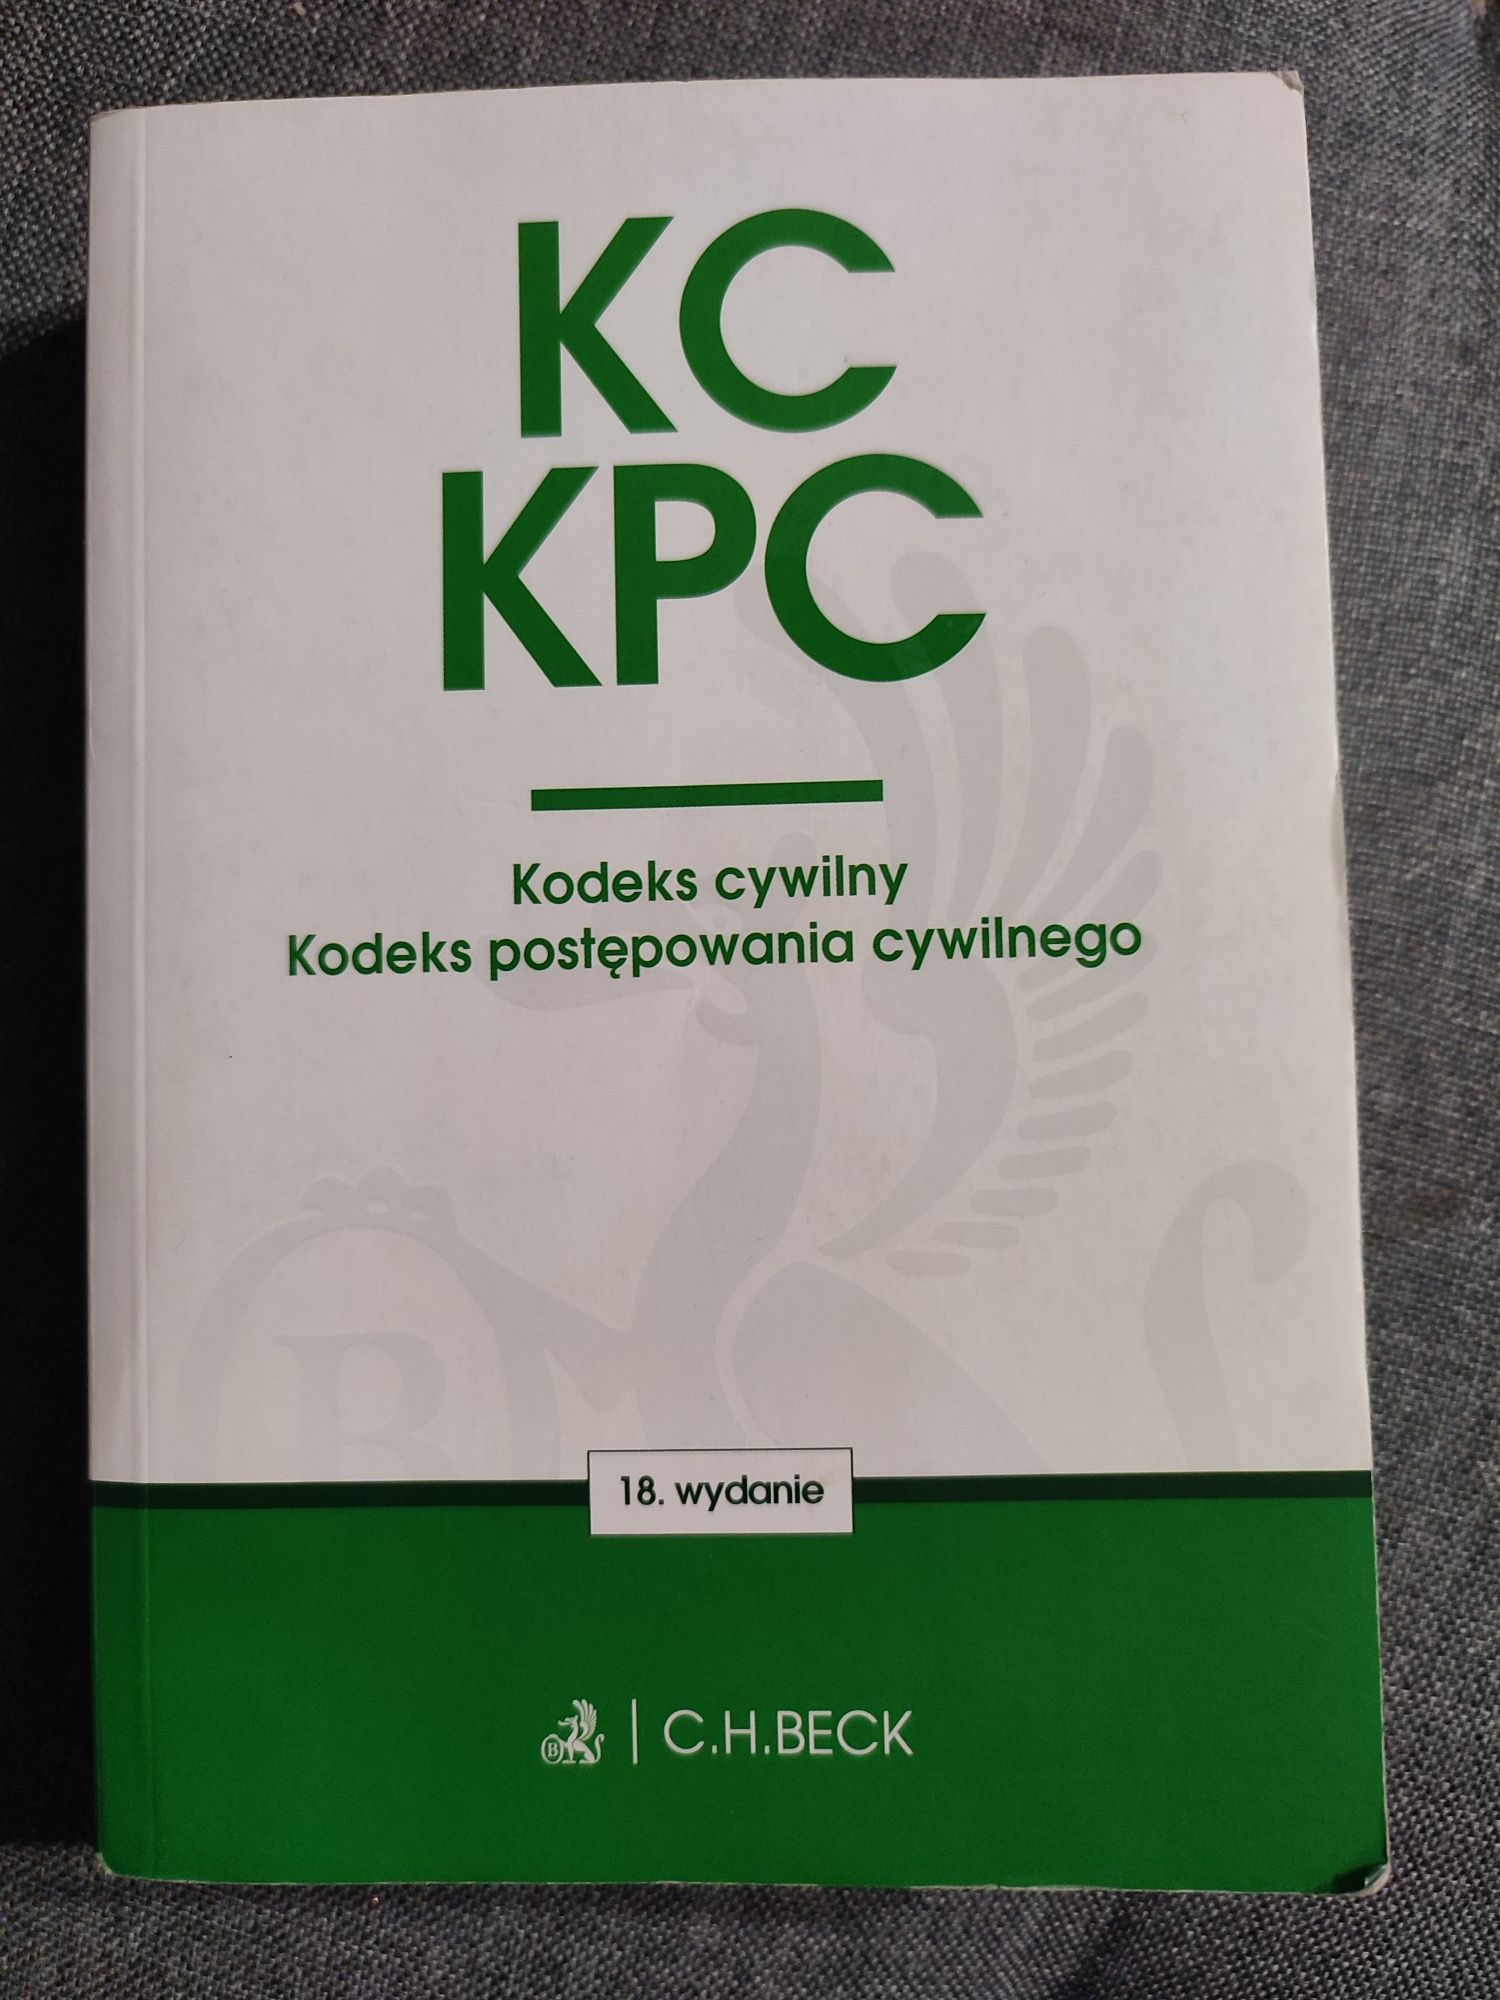 KC KPC Kodeks cywilny, Kodeks postępowania cywilnego